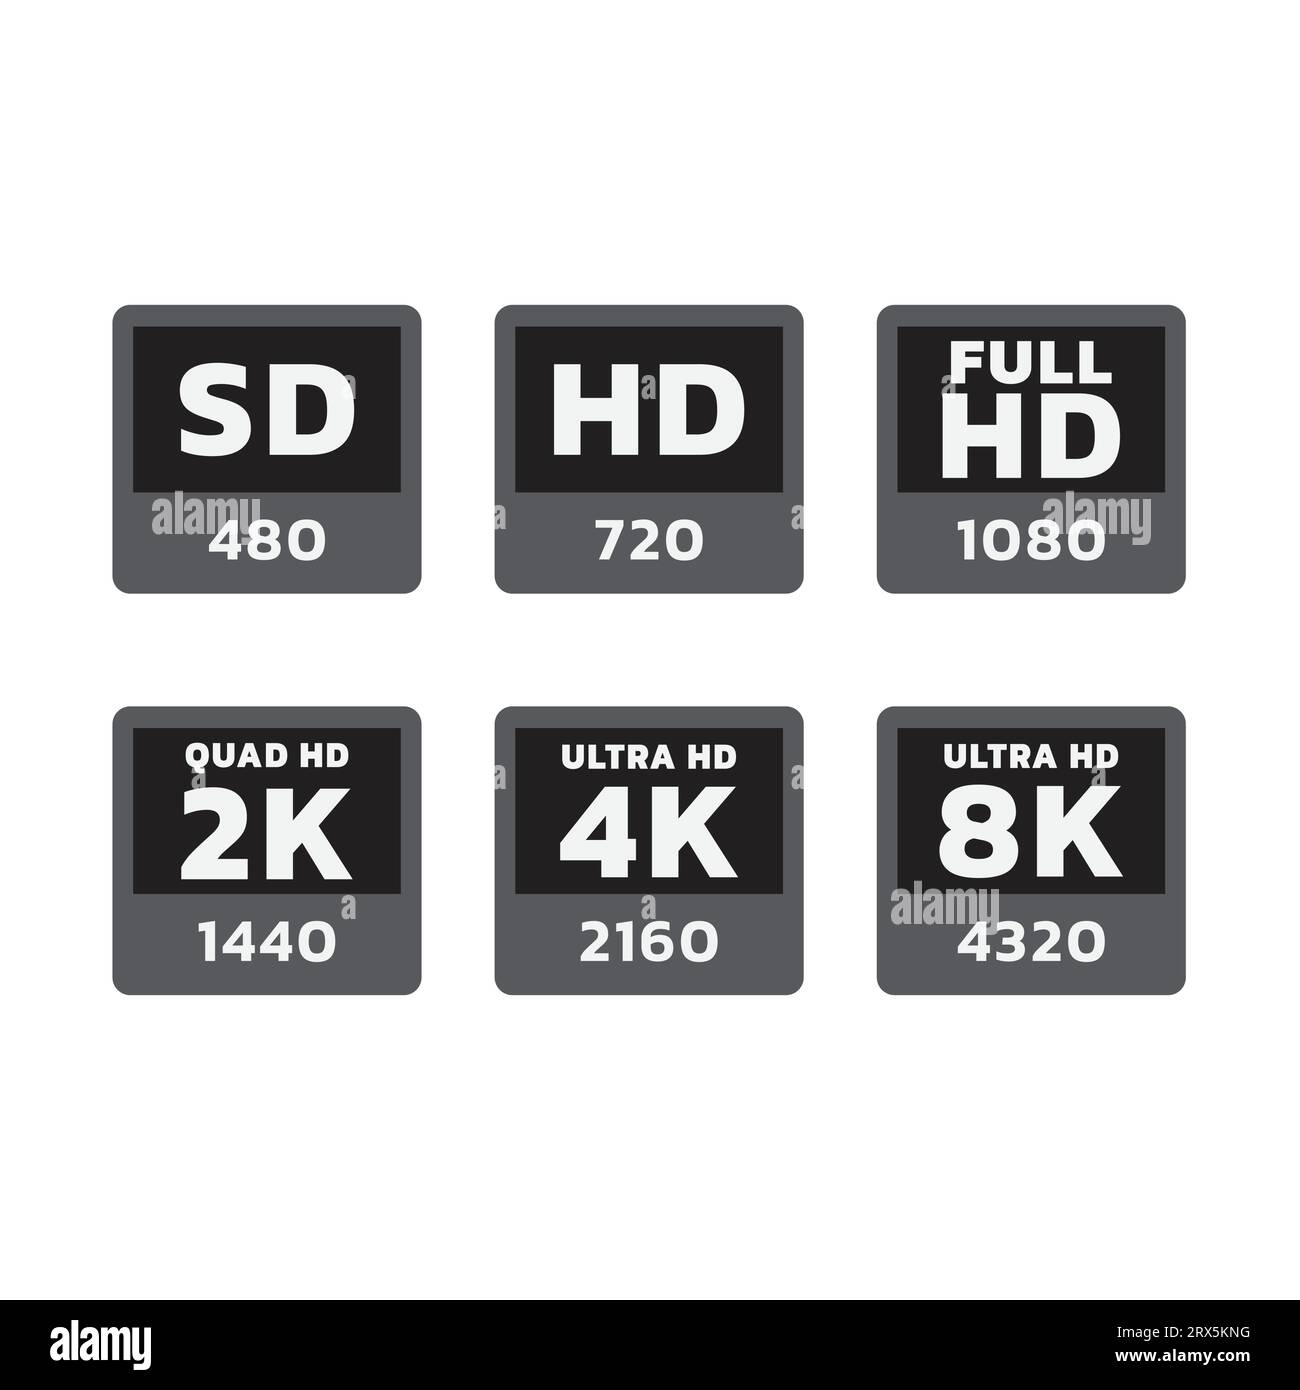 HD-, Full hd- und 8K-Vektorbeschriftungssatz. Aufkleber für Fernsehaufkleber in Ultra hd und 4K Auflösung. Stock Vektor